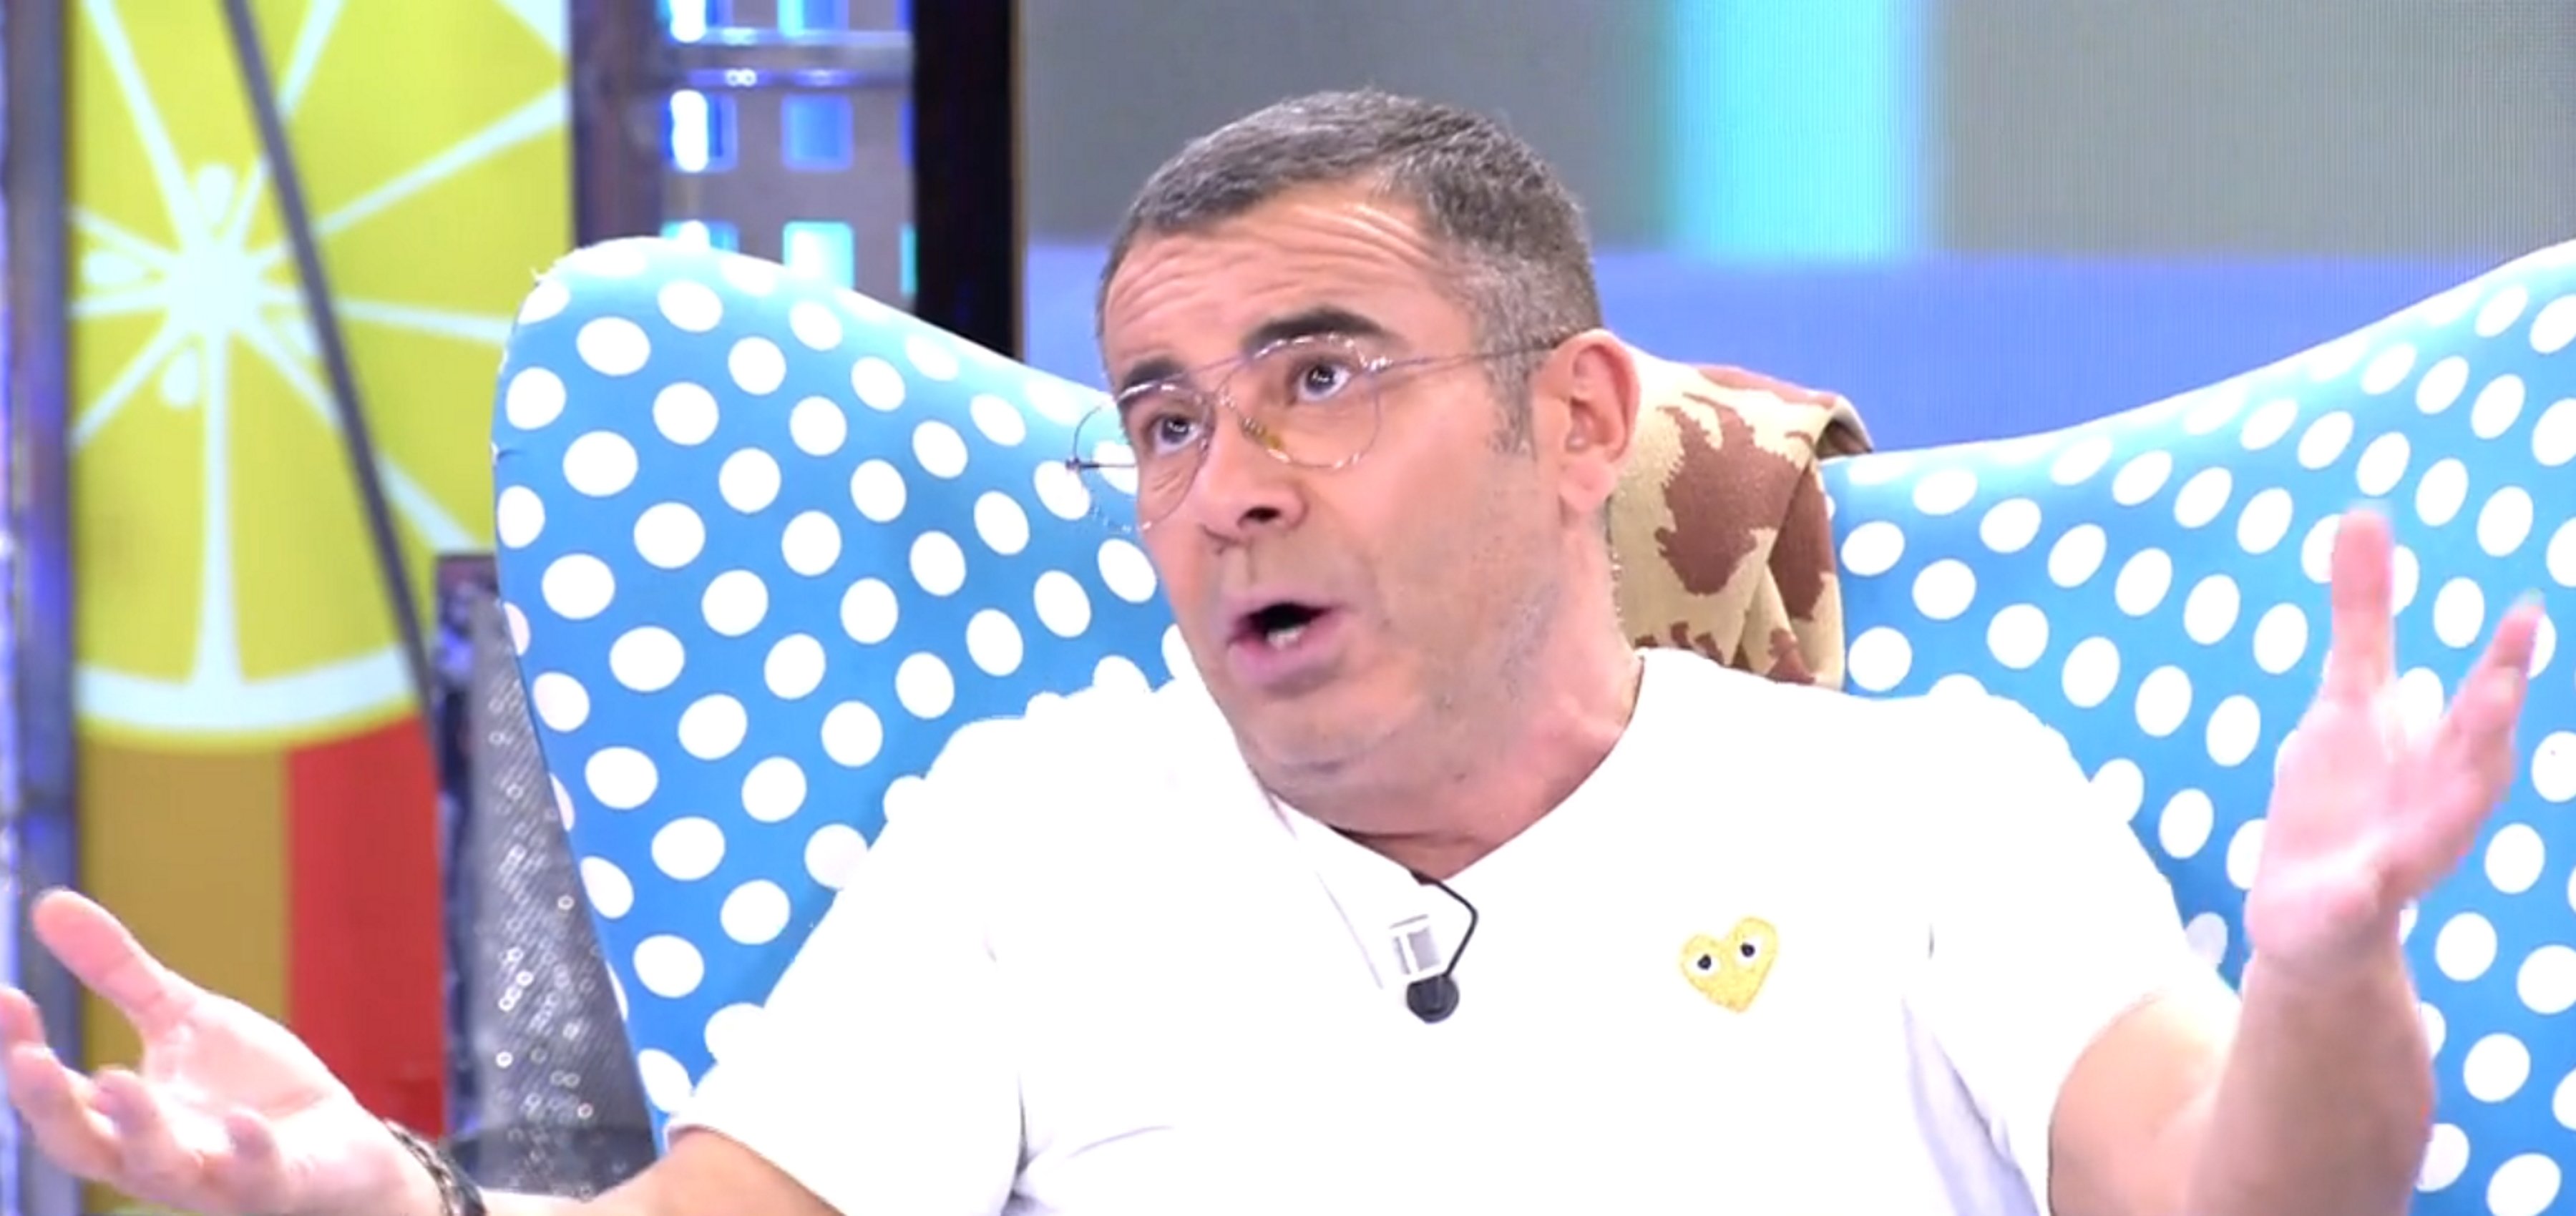 Jorge Javier Vázquez ja no és la gallina dels ous d'or de Telecinco